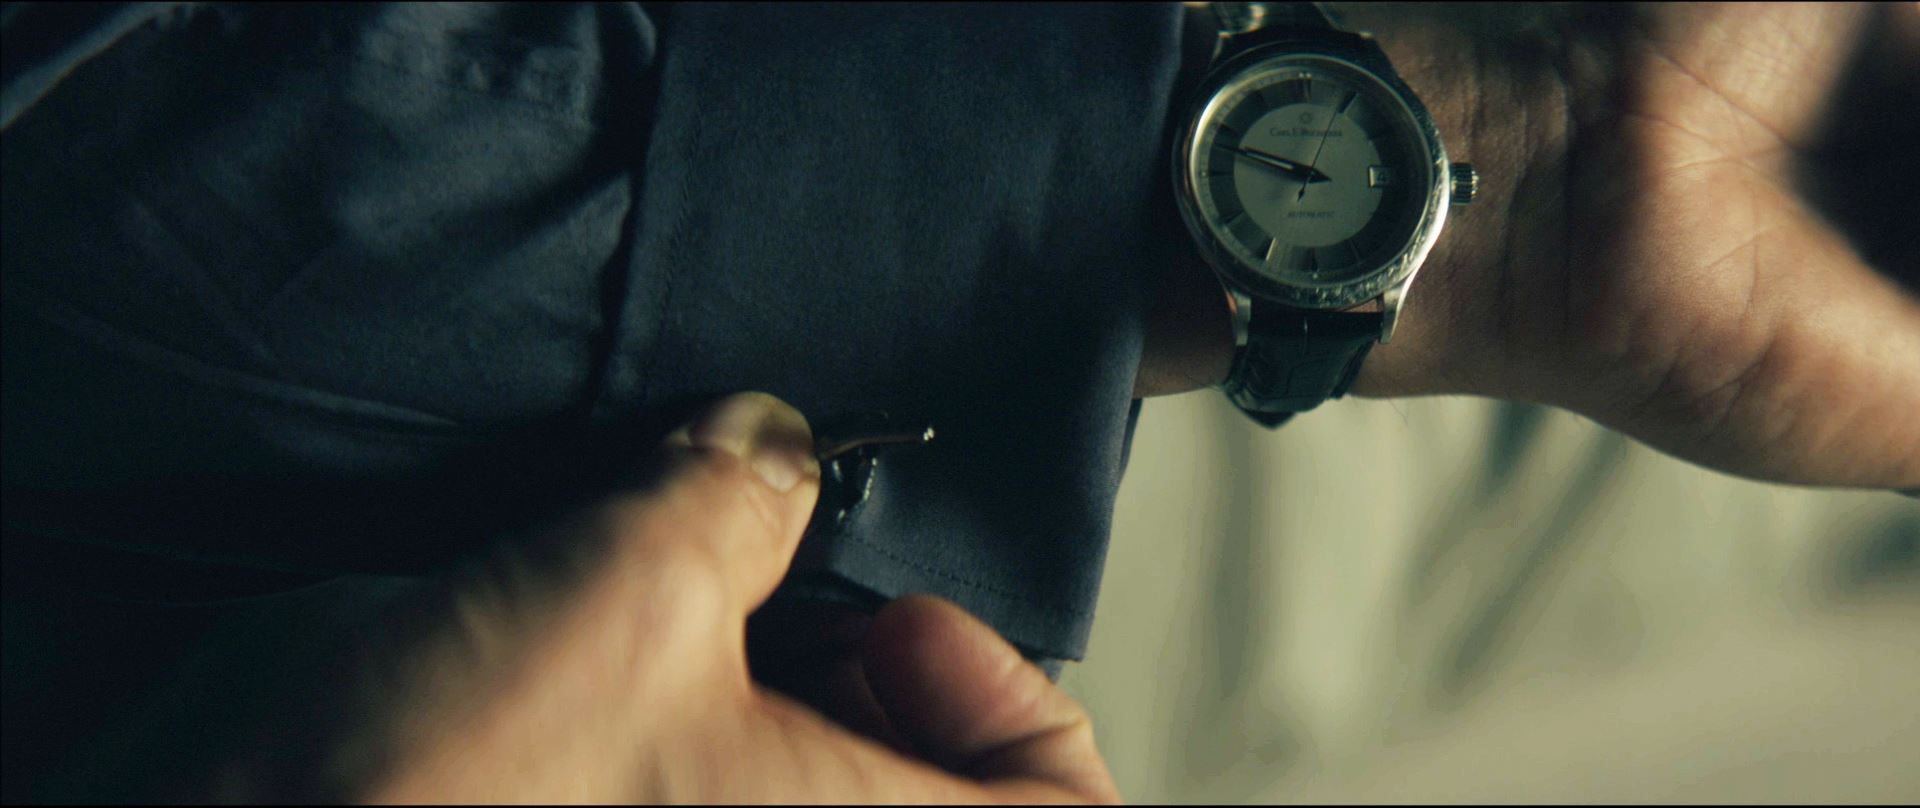 John Wick wrist watch.jpg